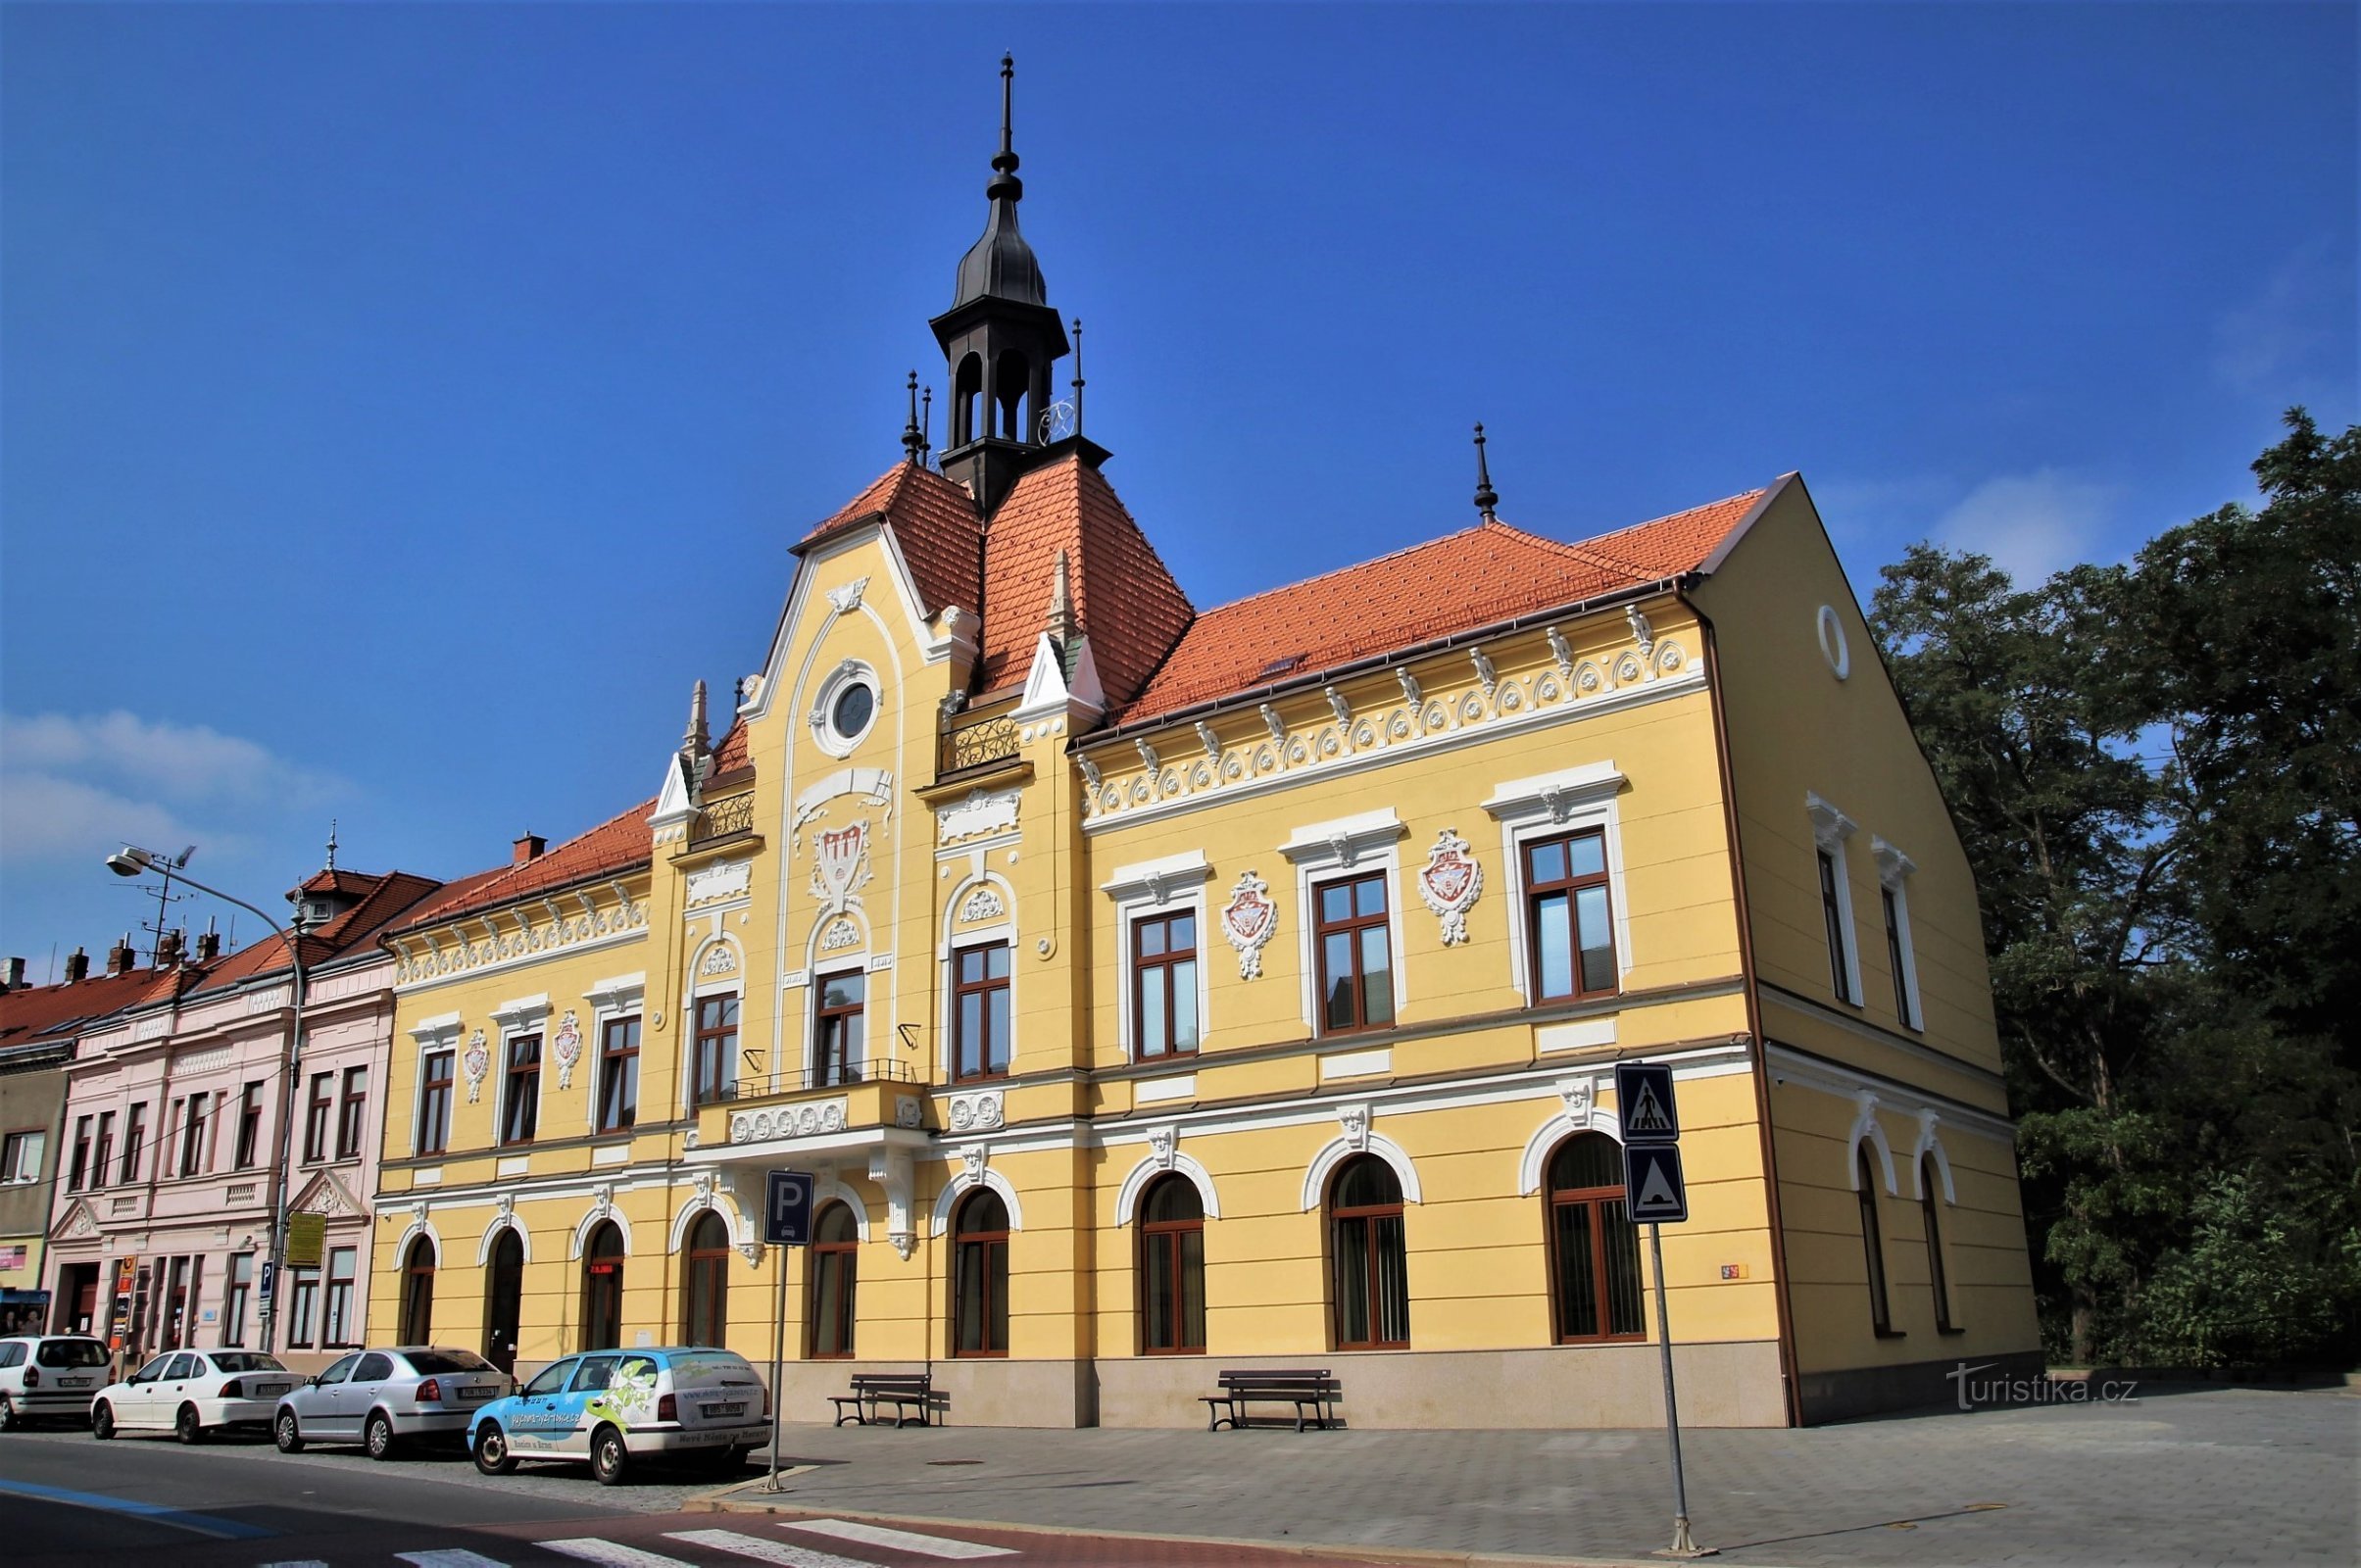 Pohořelice - Trung tâm văn hóa và thông tin